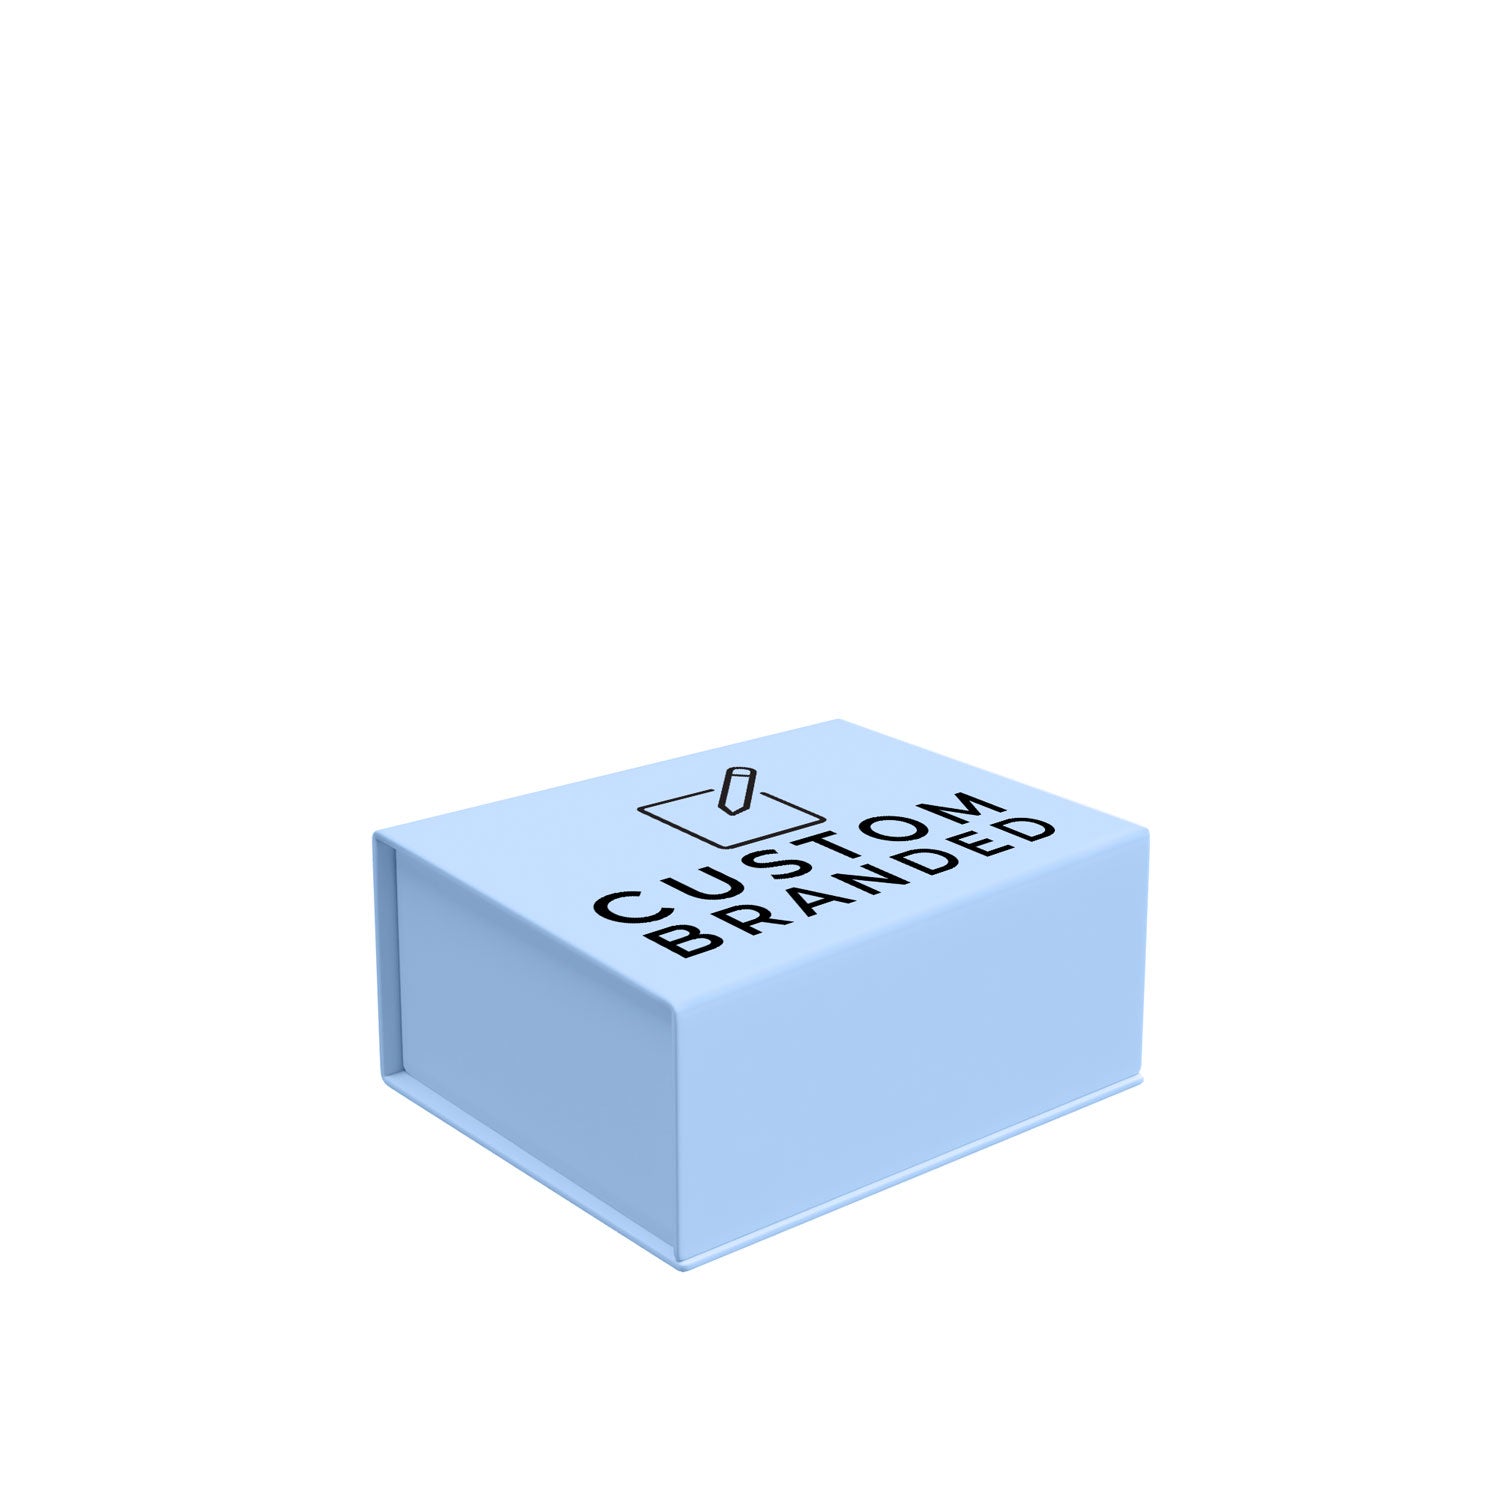 Custom Premium Magnetic Gift Box Blue - Medium